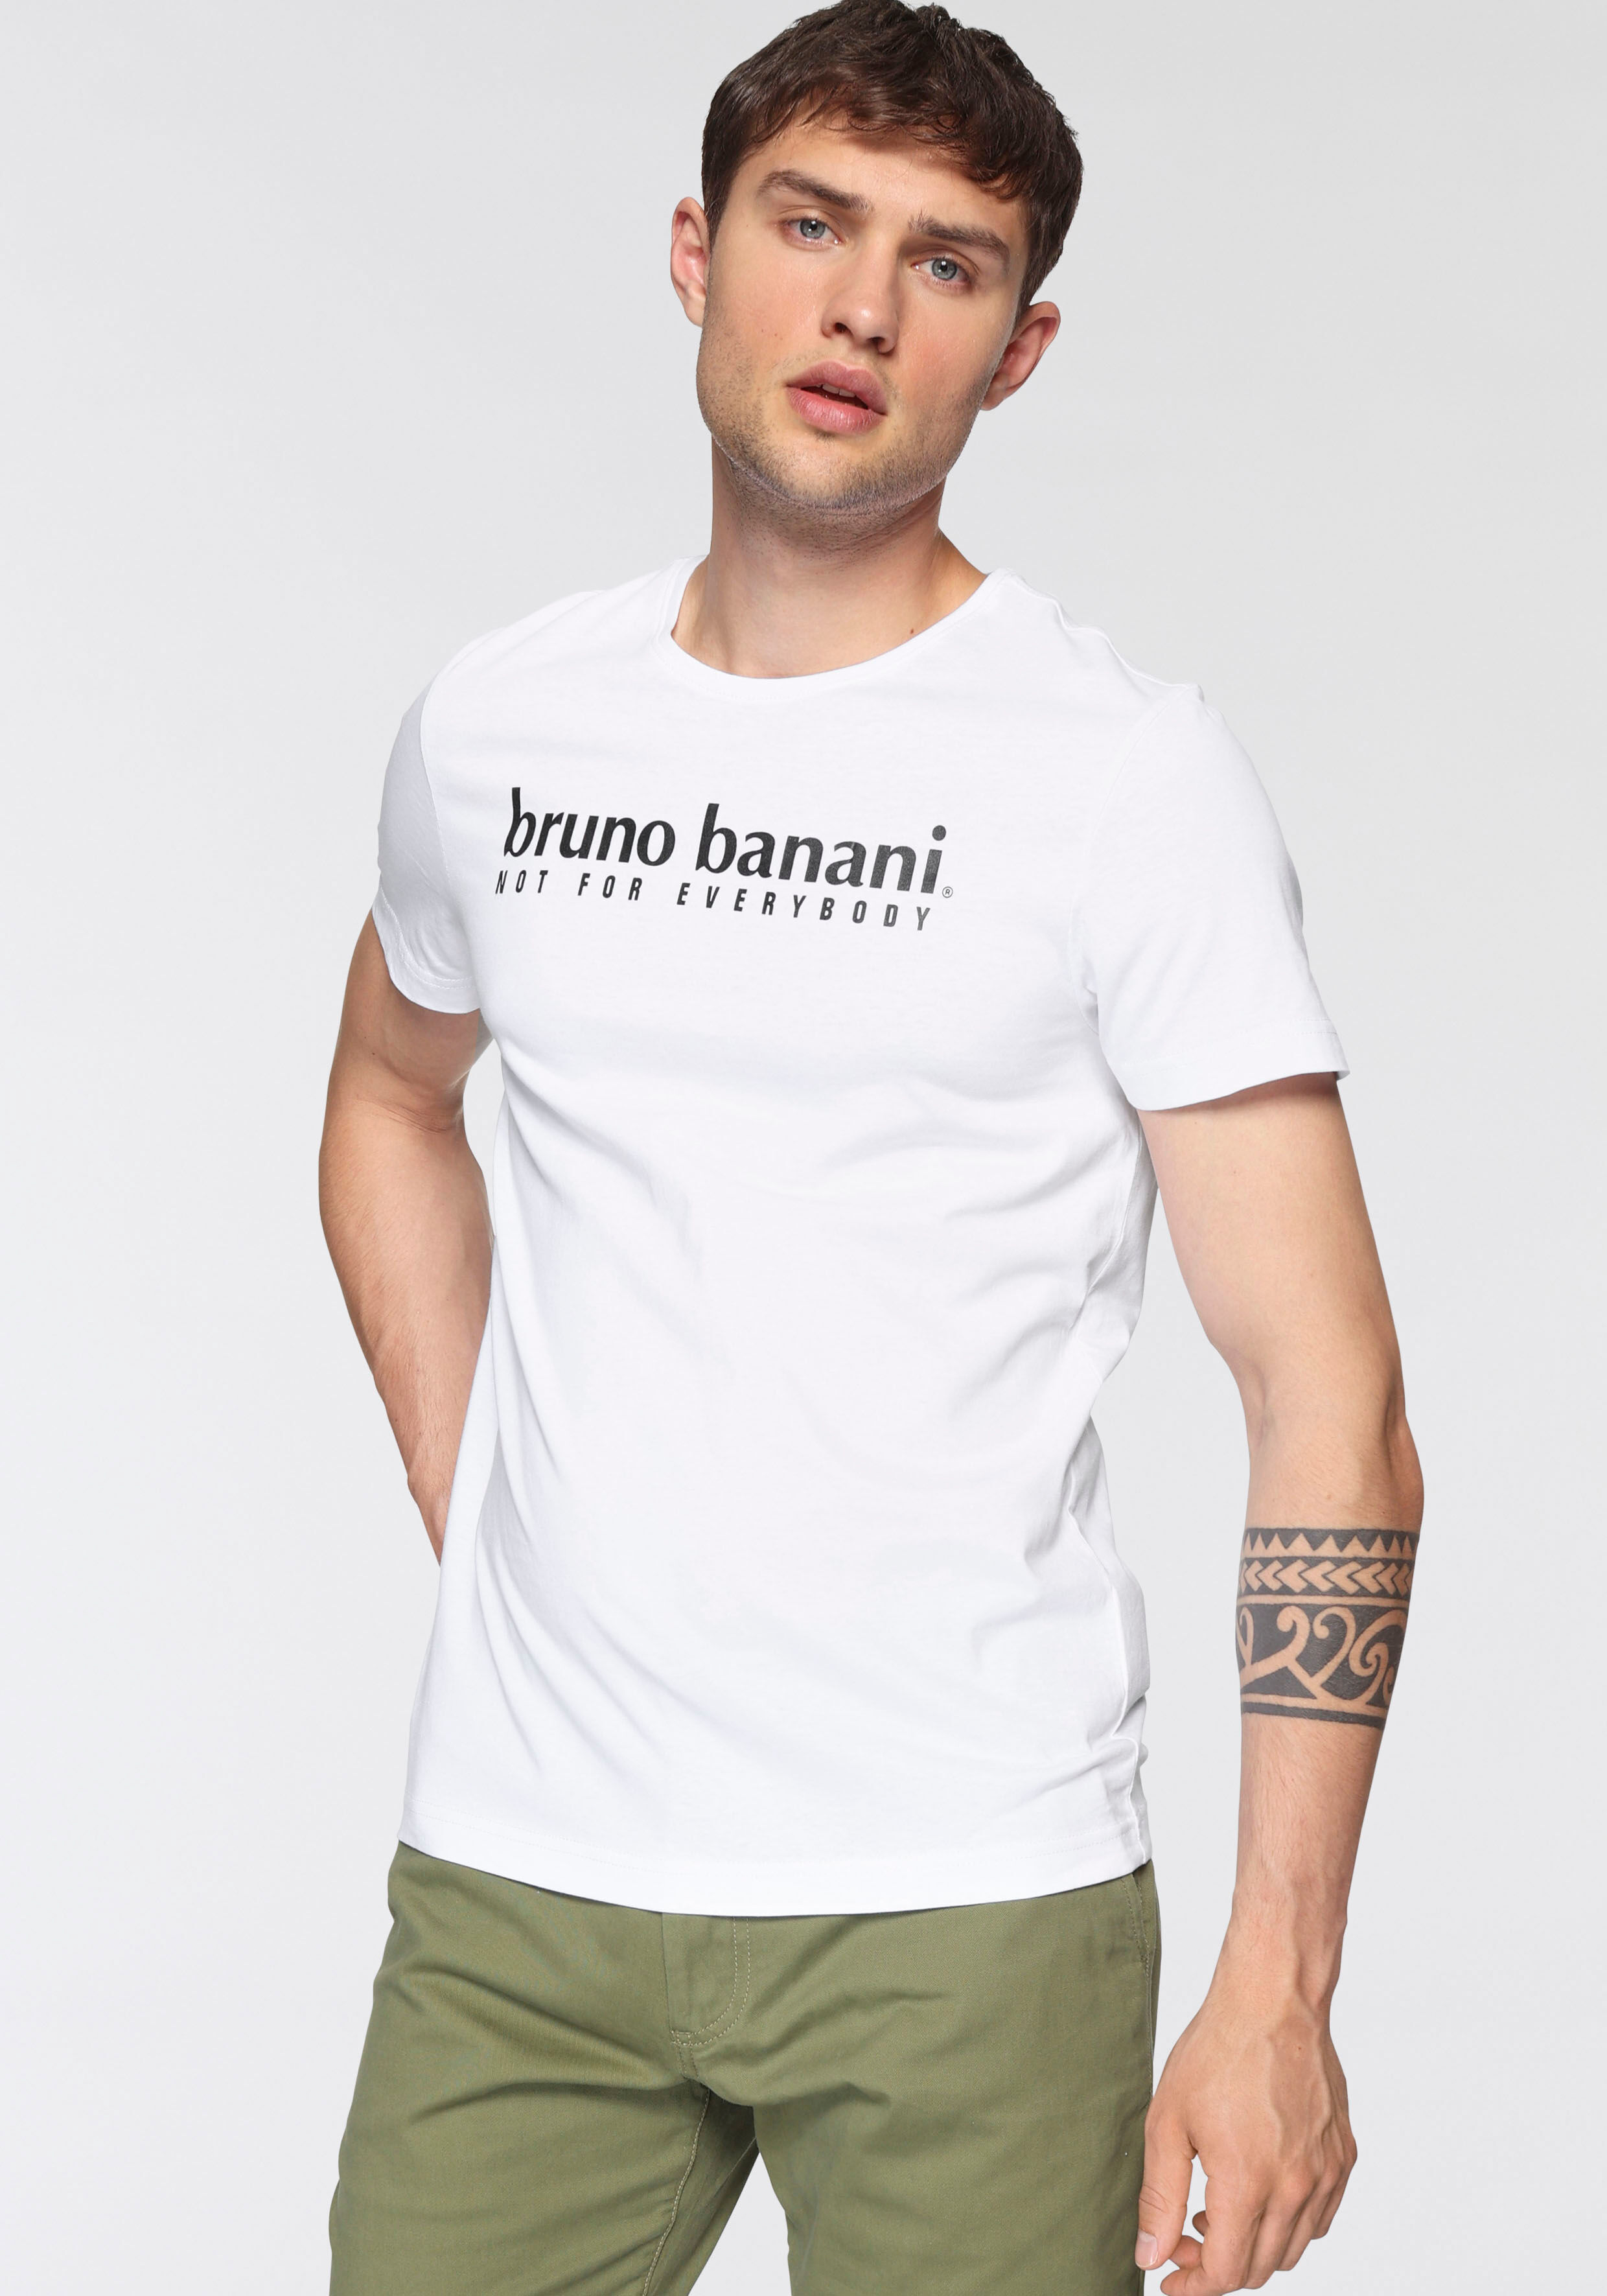 Bruno Banani T-Shirt, (2er-Pack), mit Markenfrontprint schwarz  4XL (68/70) L (52/54) M (48/50) S (44/46) XL (56/58) XXL (60/62) XXXL (64/66)